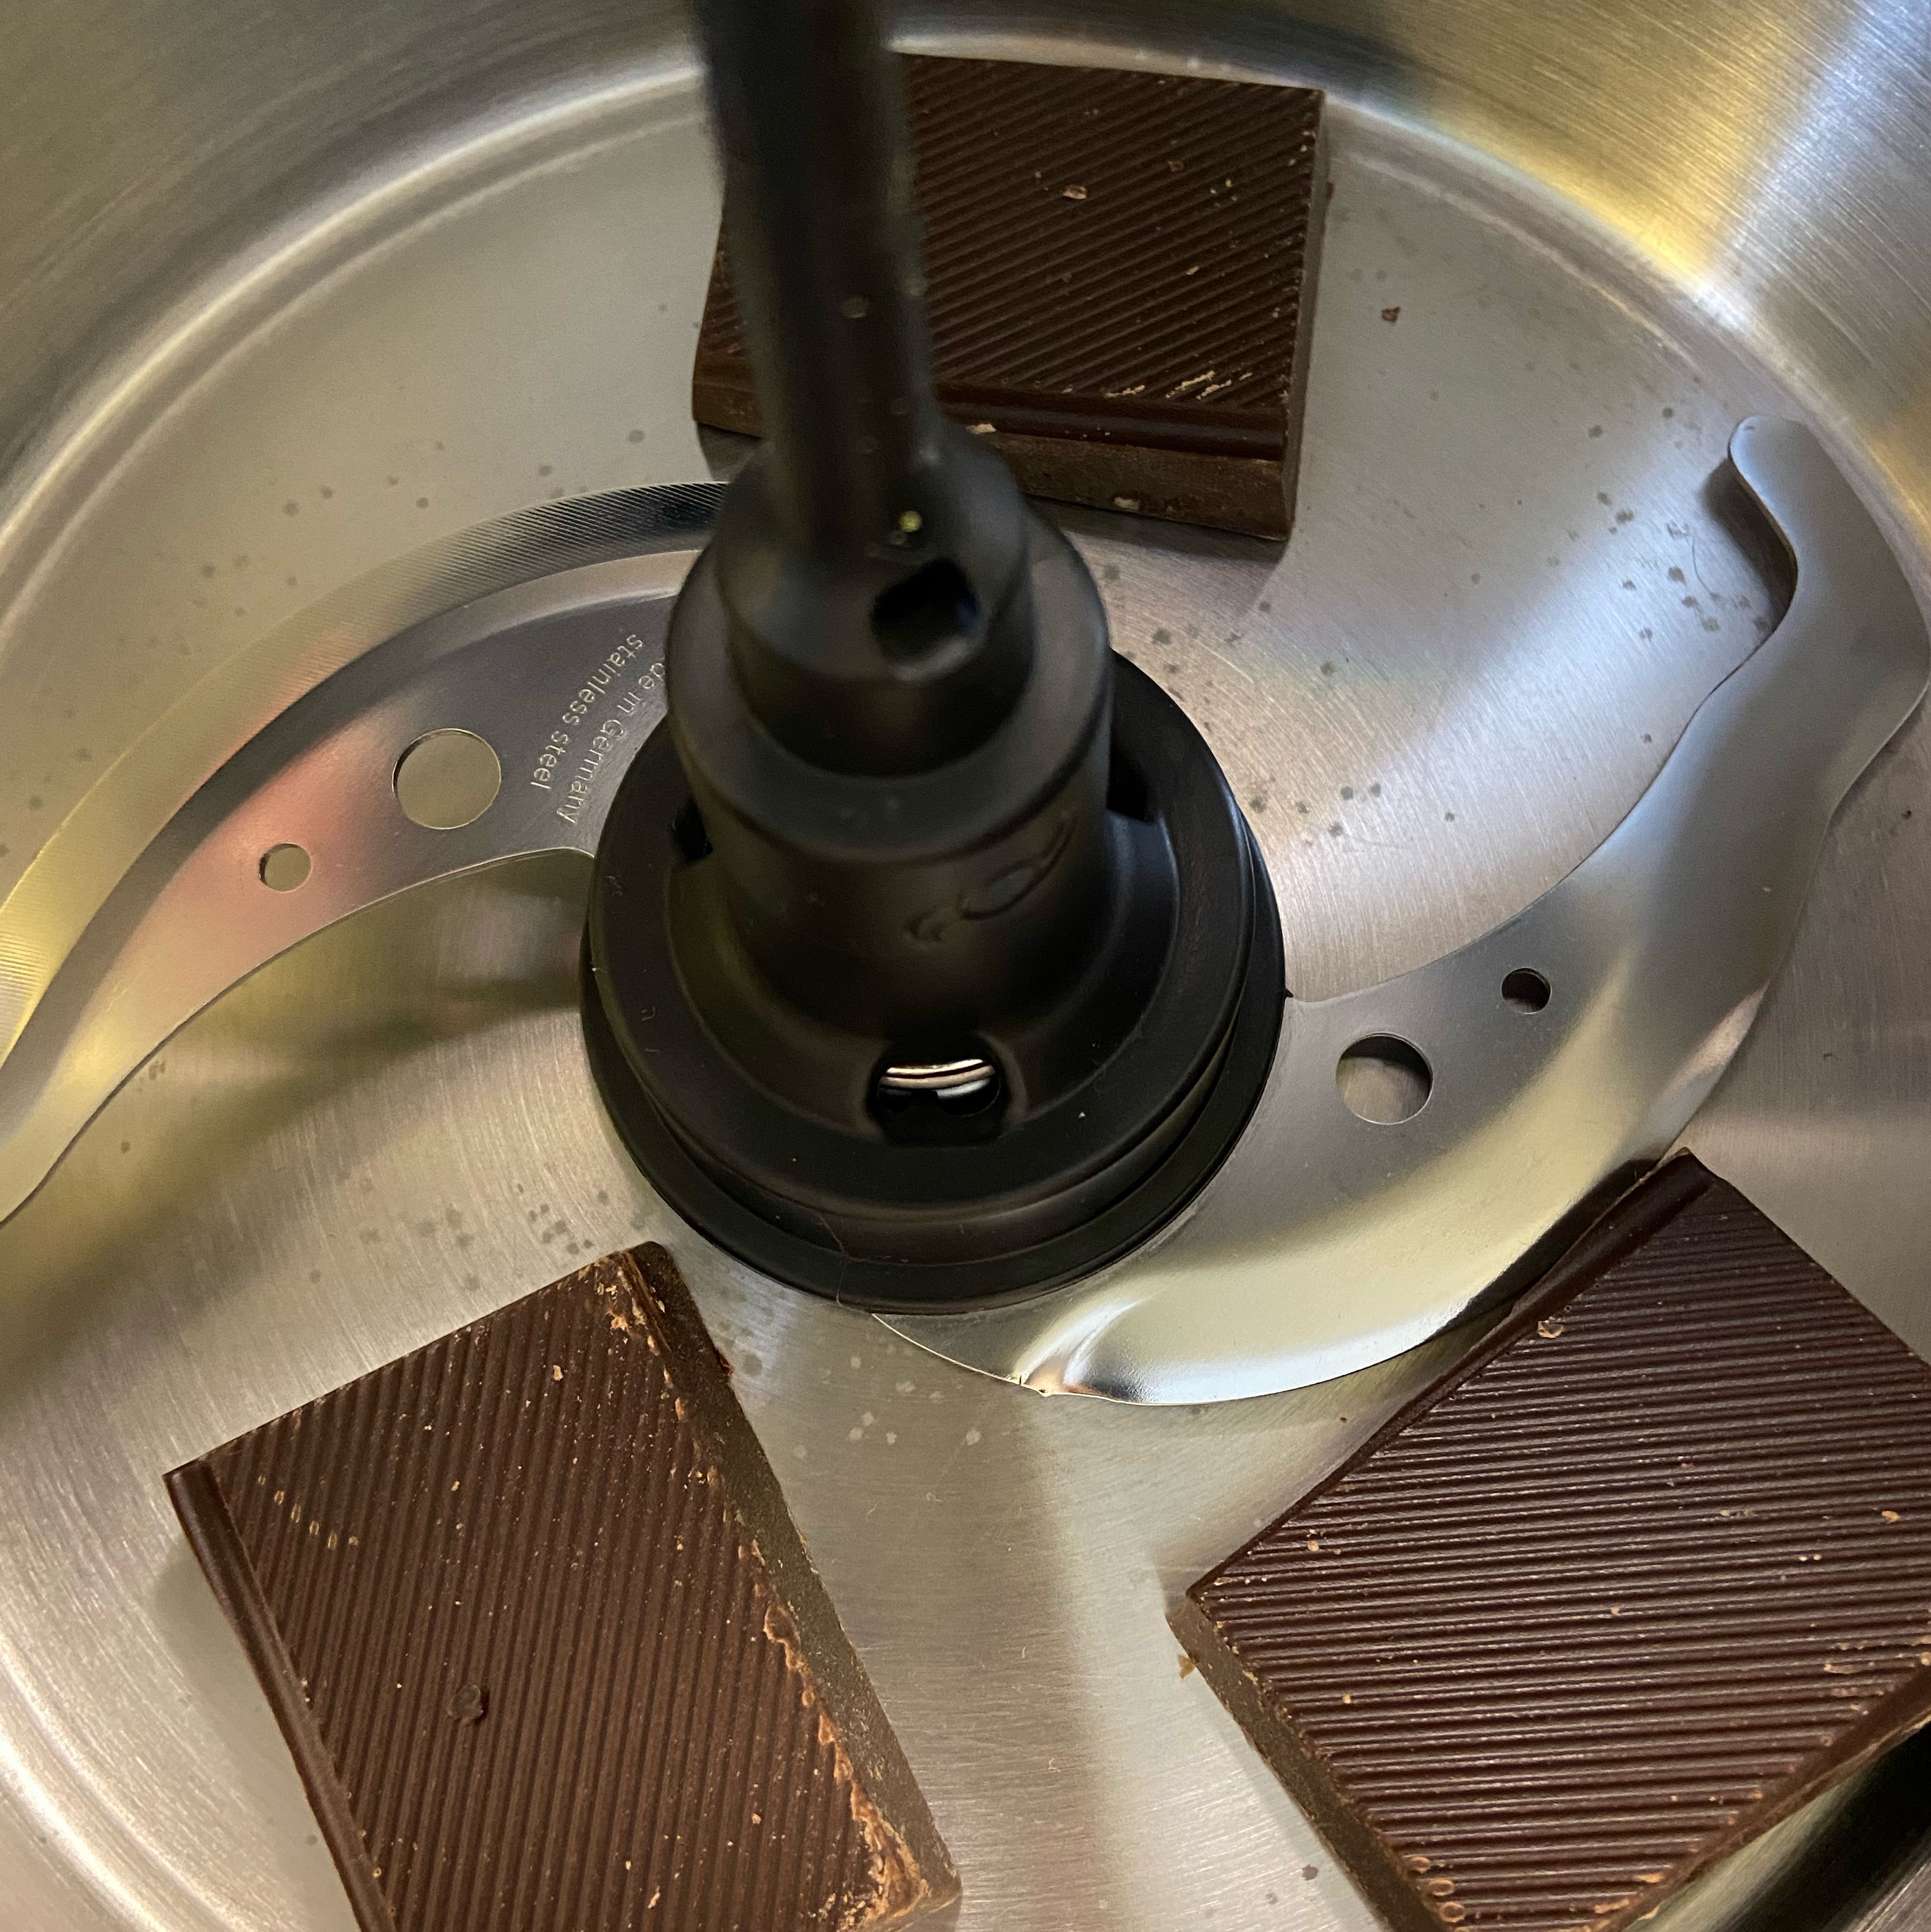 Universalmesser in den Cookit einsetzten. Die Schokolade im Cookit mit dem Universalmesser zerkleinern (Universalmesser | Stufe 18 | 10 Sek.). Nicht zu fein. Die Schokoladenstücke in eine extra Schüssel geben und zur Seite stellen.